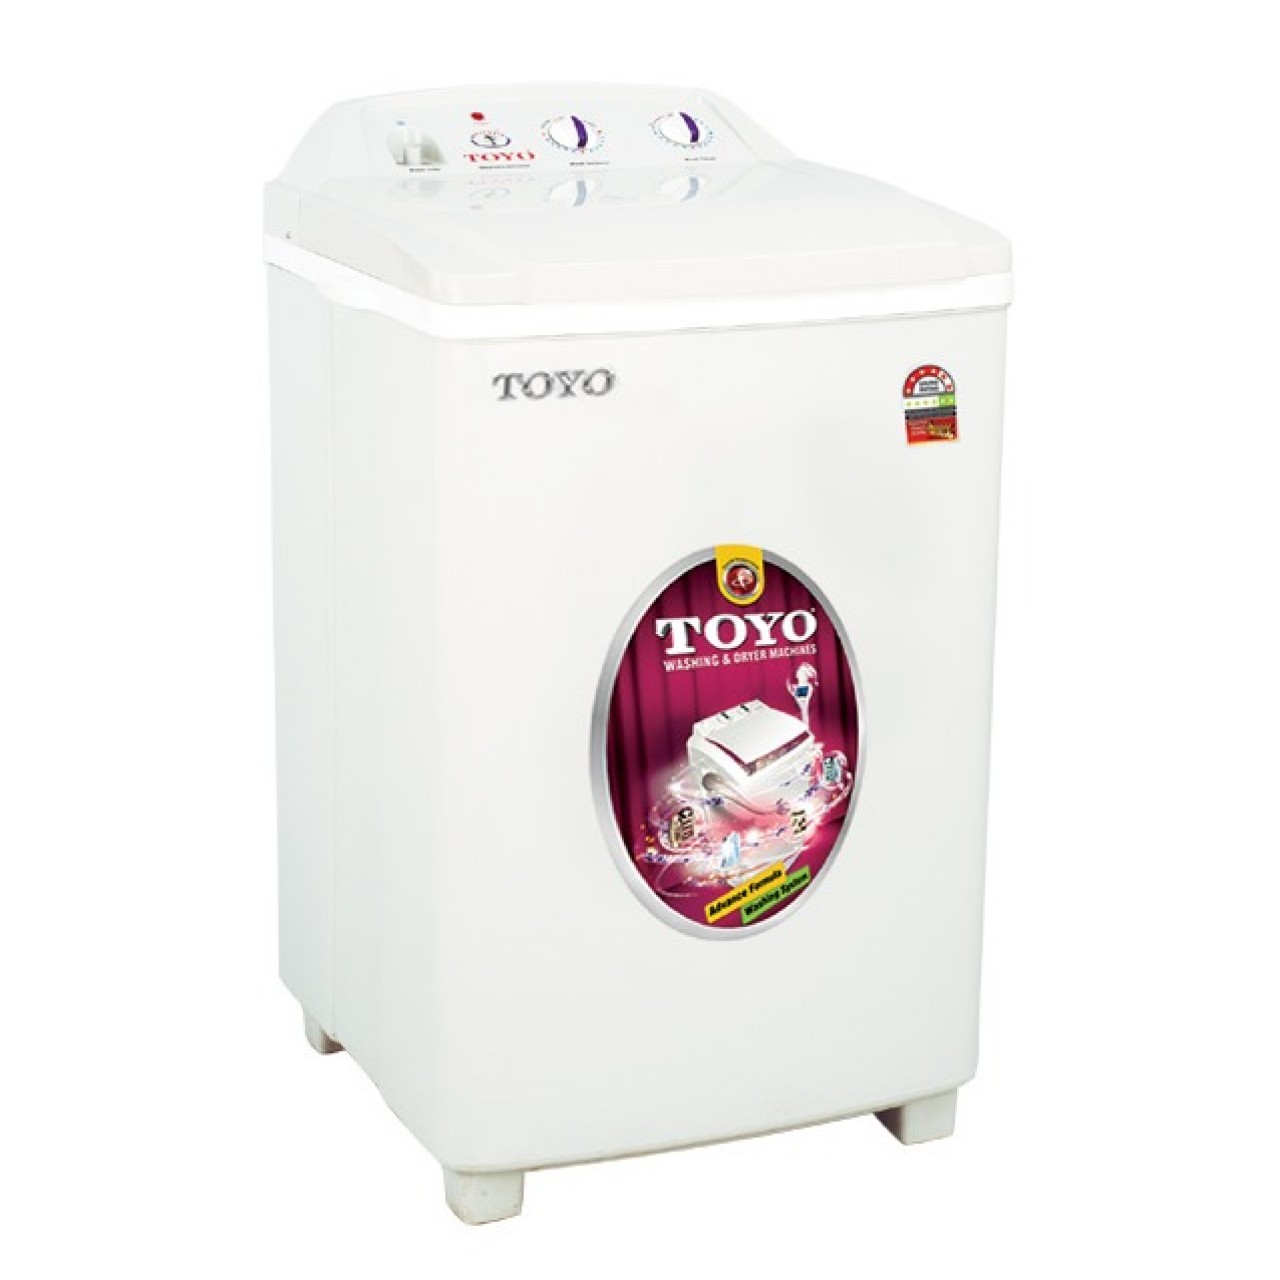 Toyo Single Tub Washing Machine Tw-676 - Capacity 10Kg